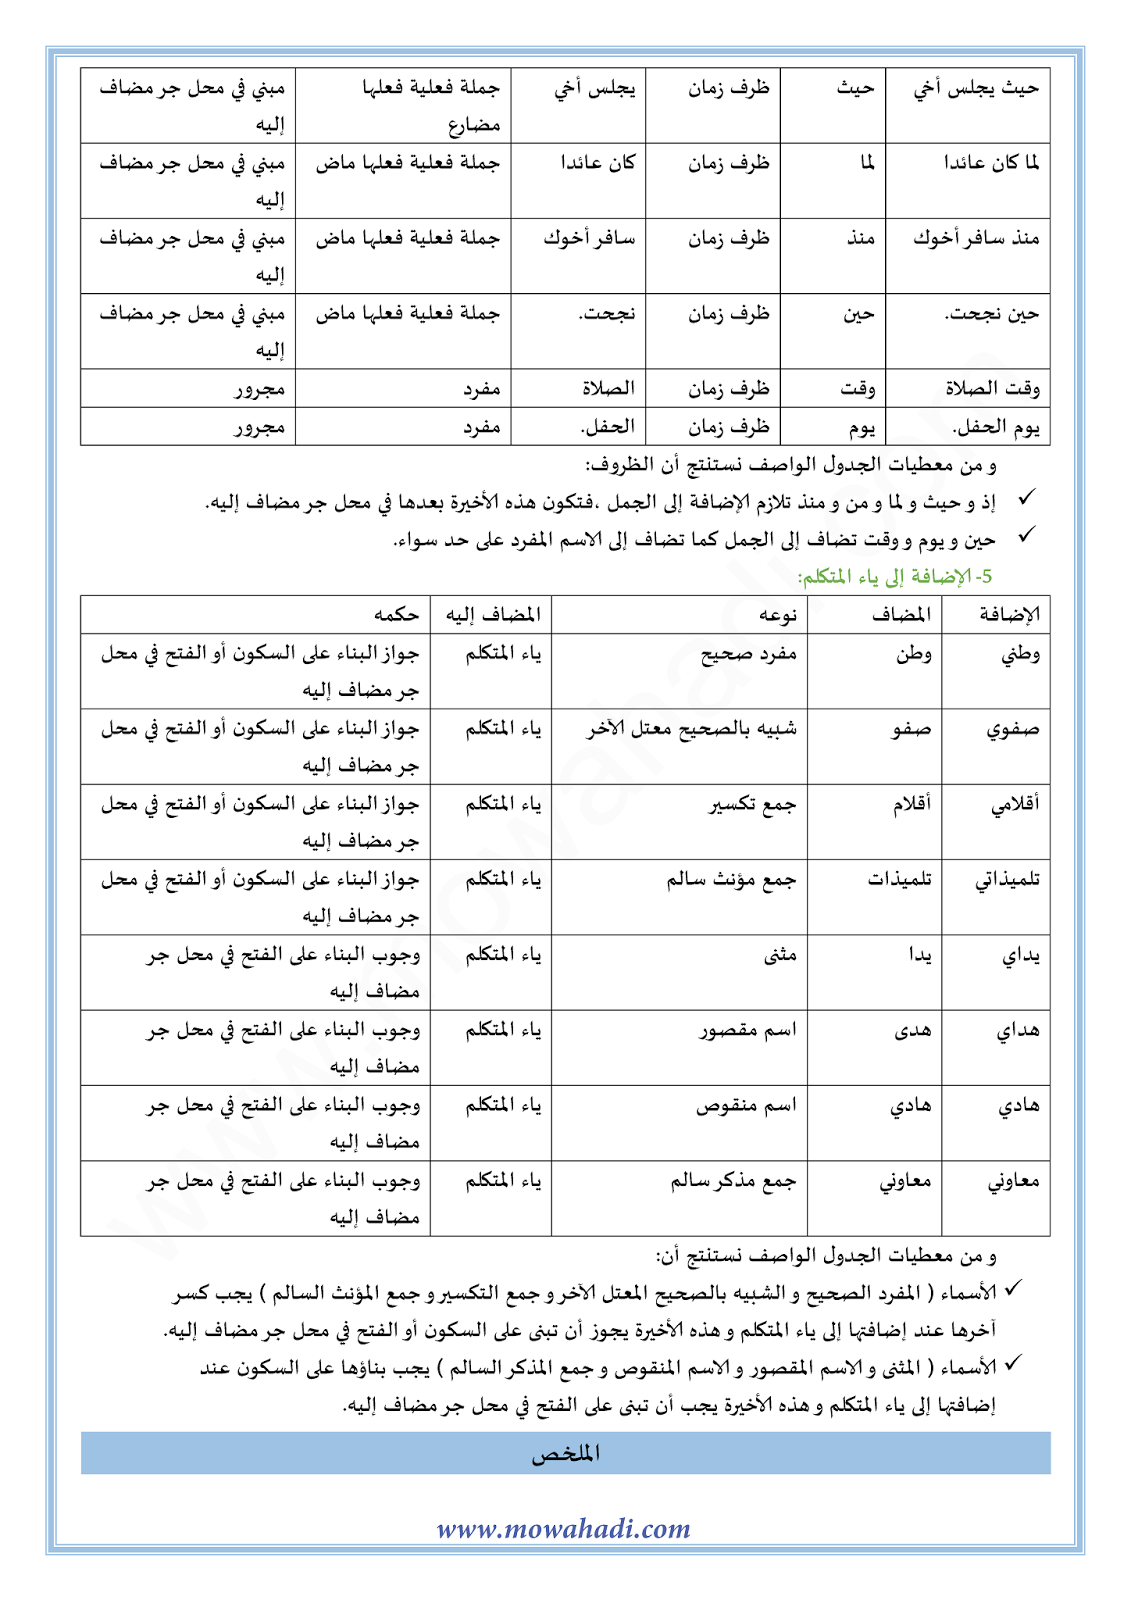 الدرس اللغوي الإضافة للسنة الثالثة اعدادي في مادة اللغة العربية 6-cours-dars-loghawi3_003